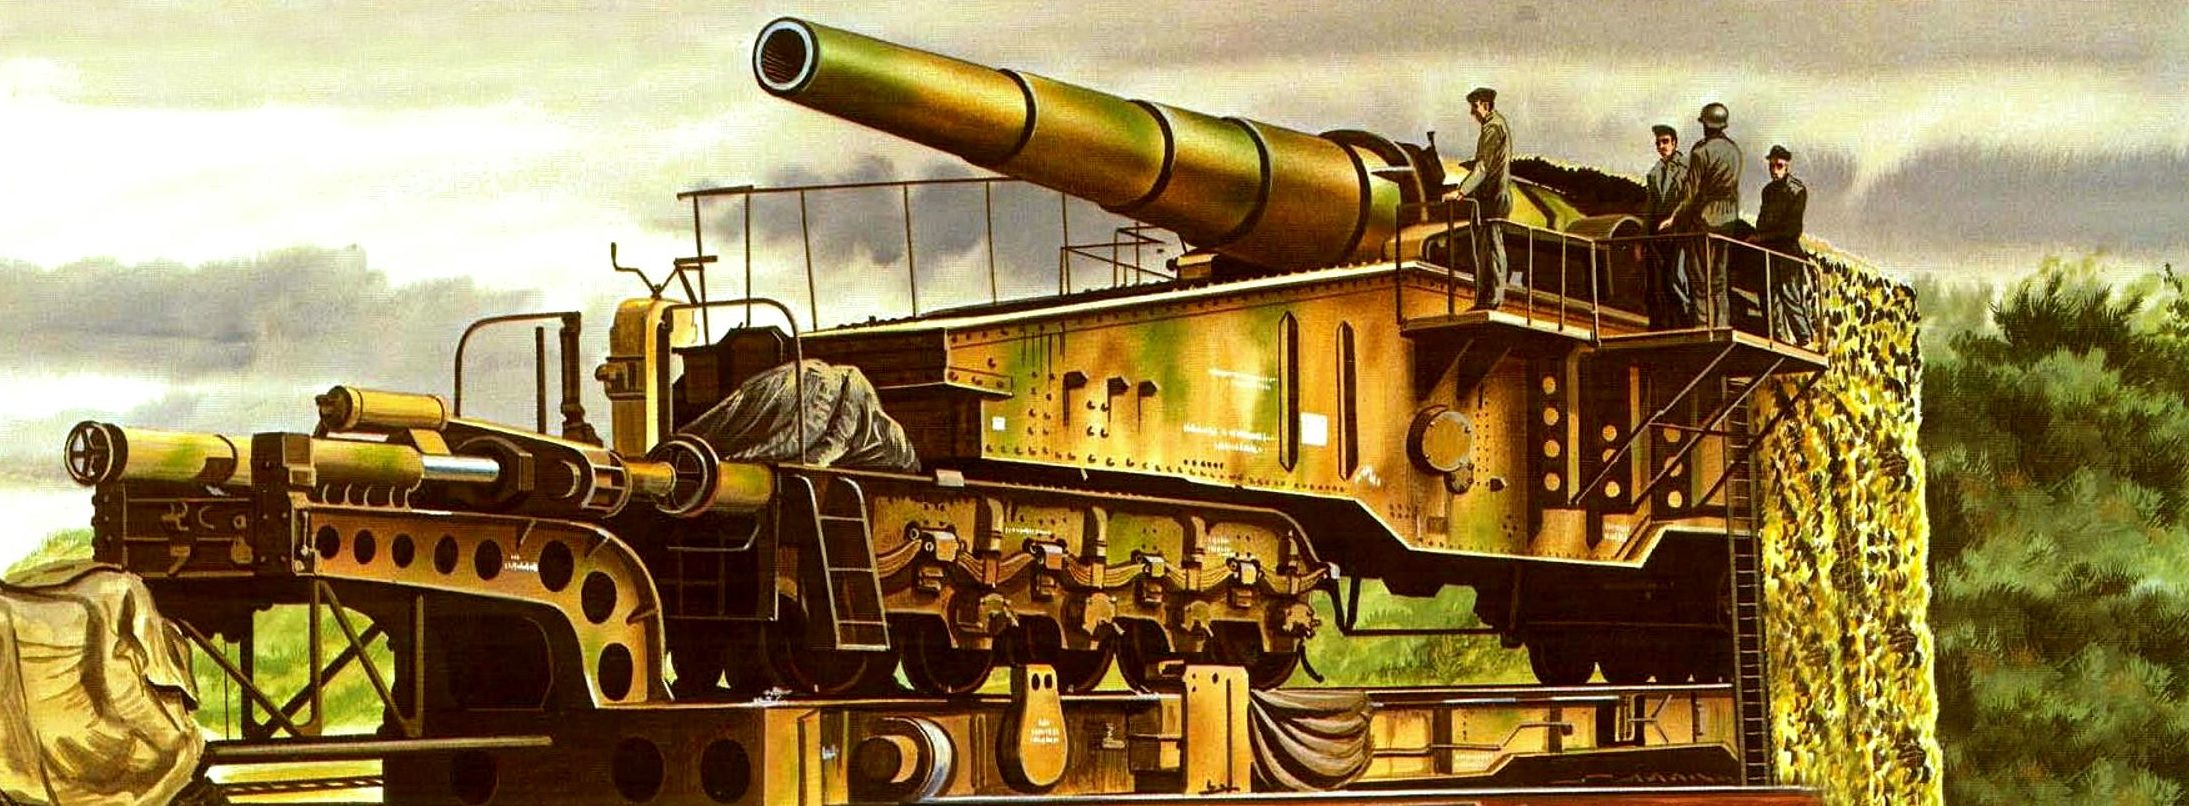 Greer Don. Железнодорожное 28-cm орудие «Kurze Bruno» L/40.